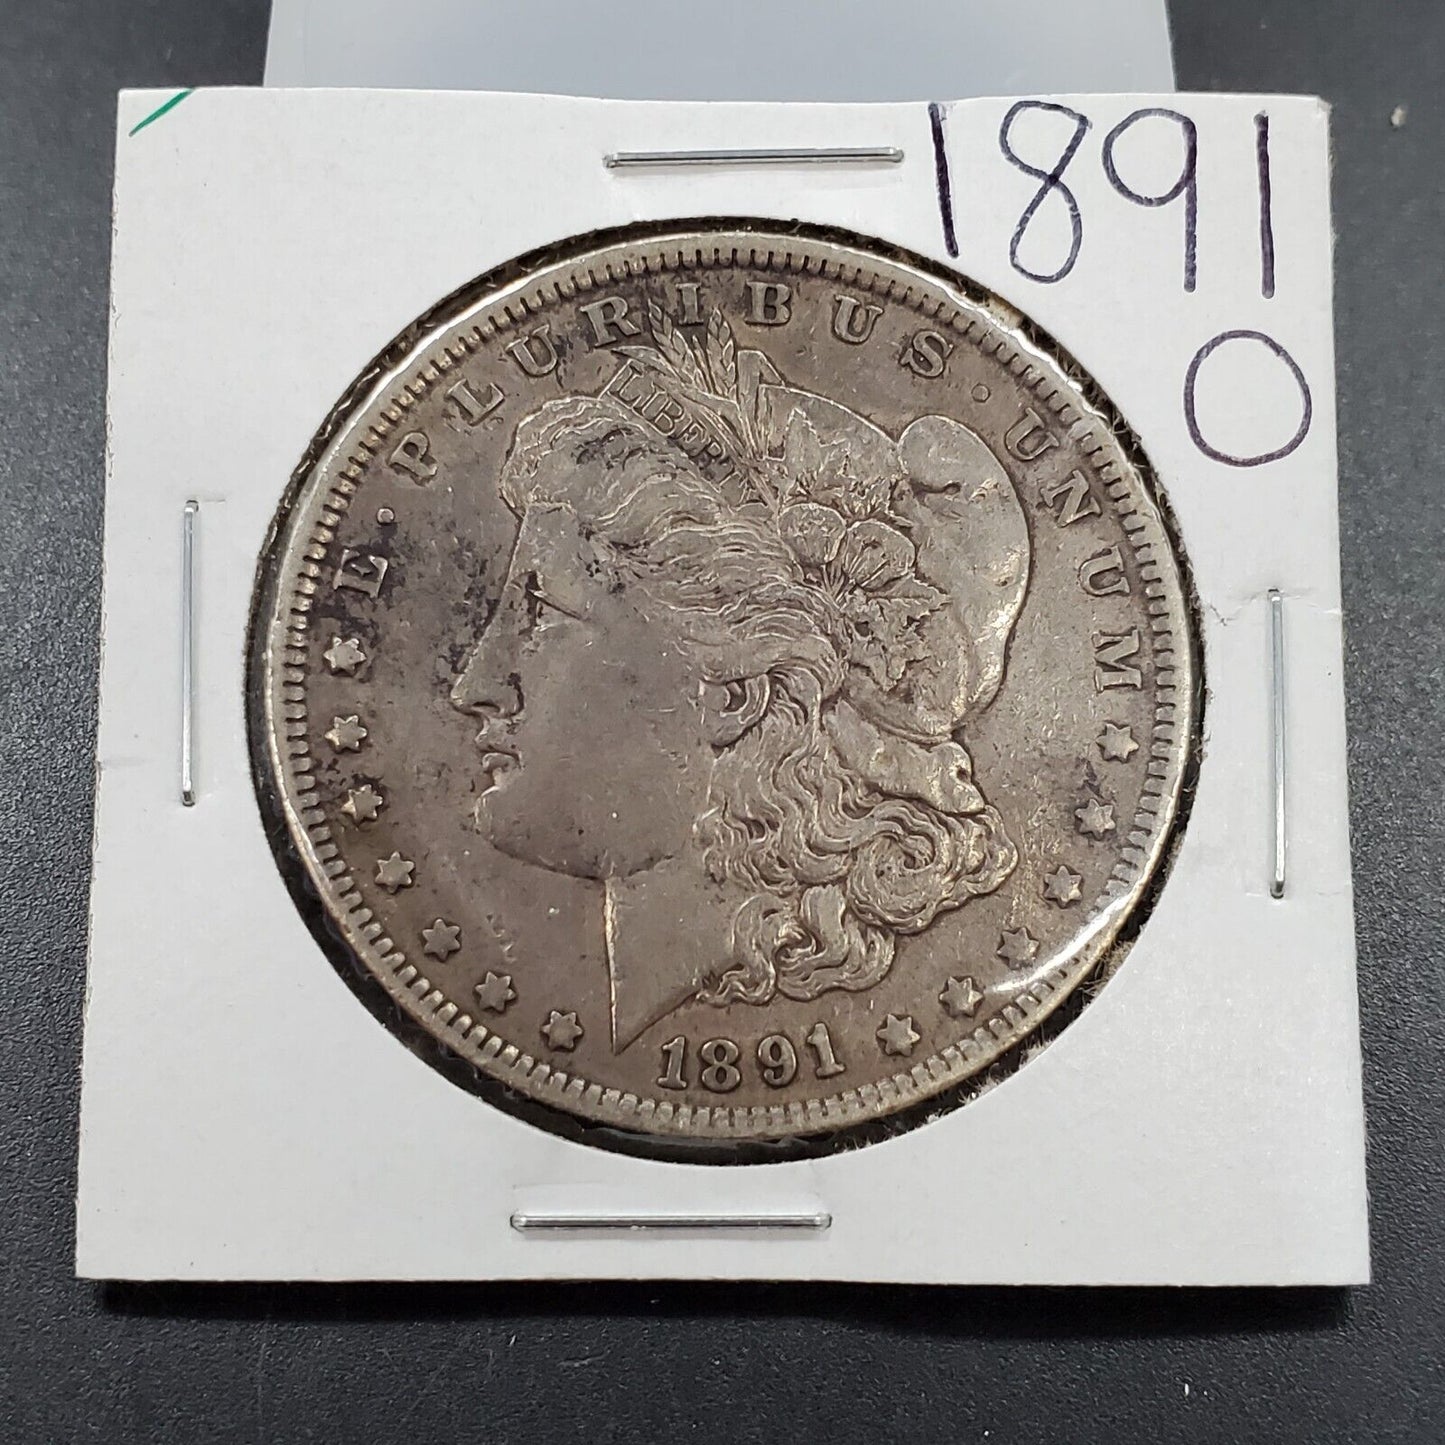 1891 O $1 Morgan Silver Eagle Dollar Coin Choice VF Very Fine Circulated